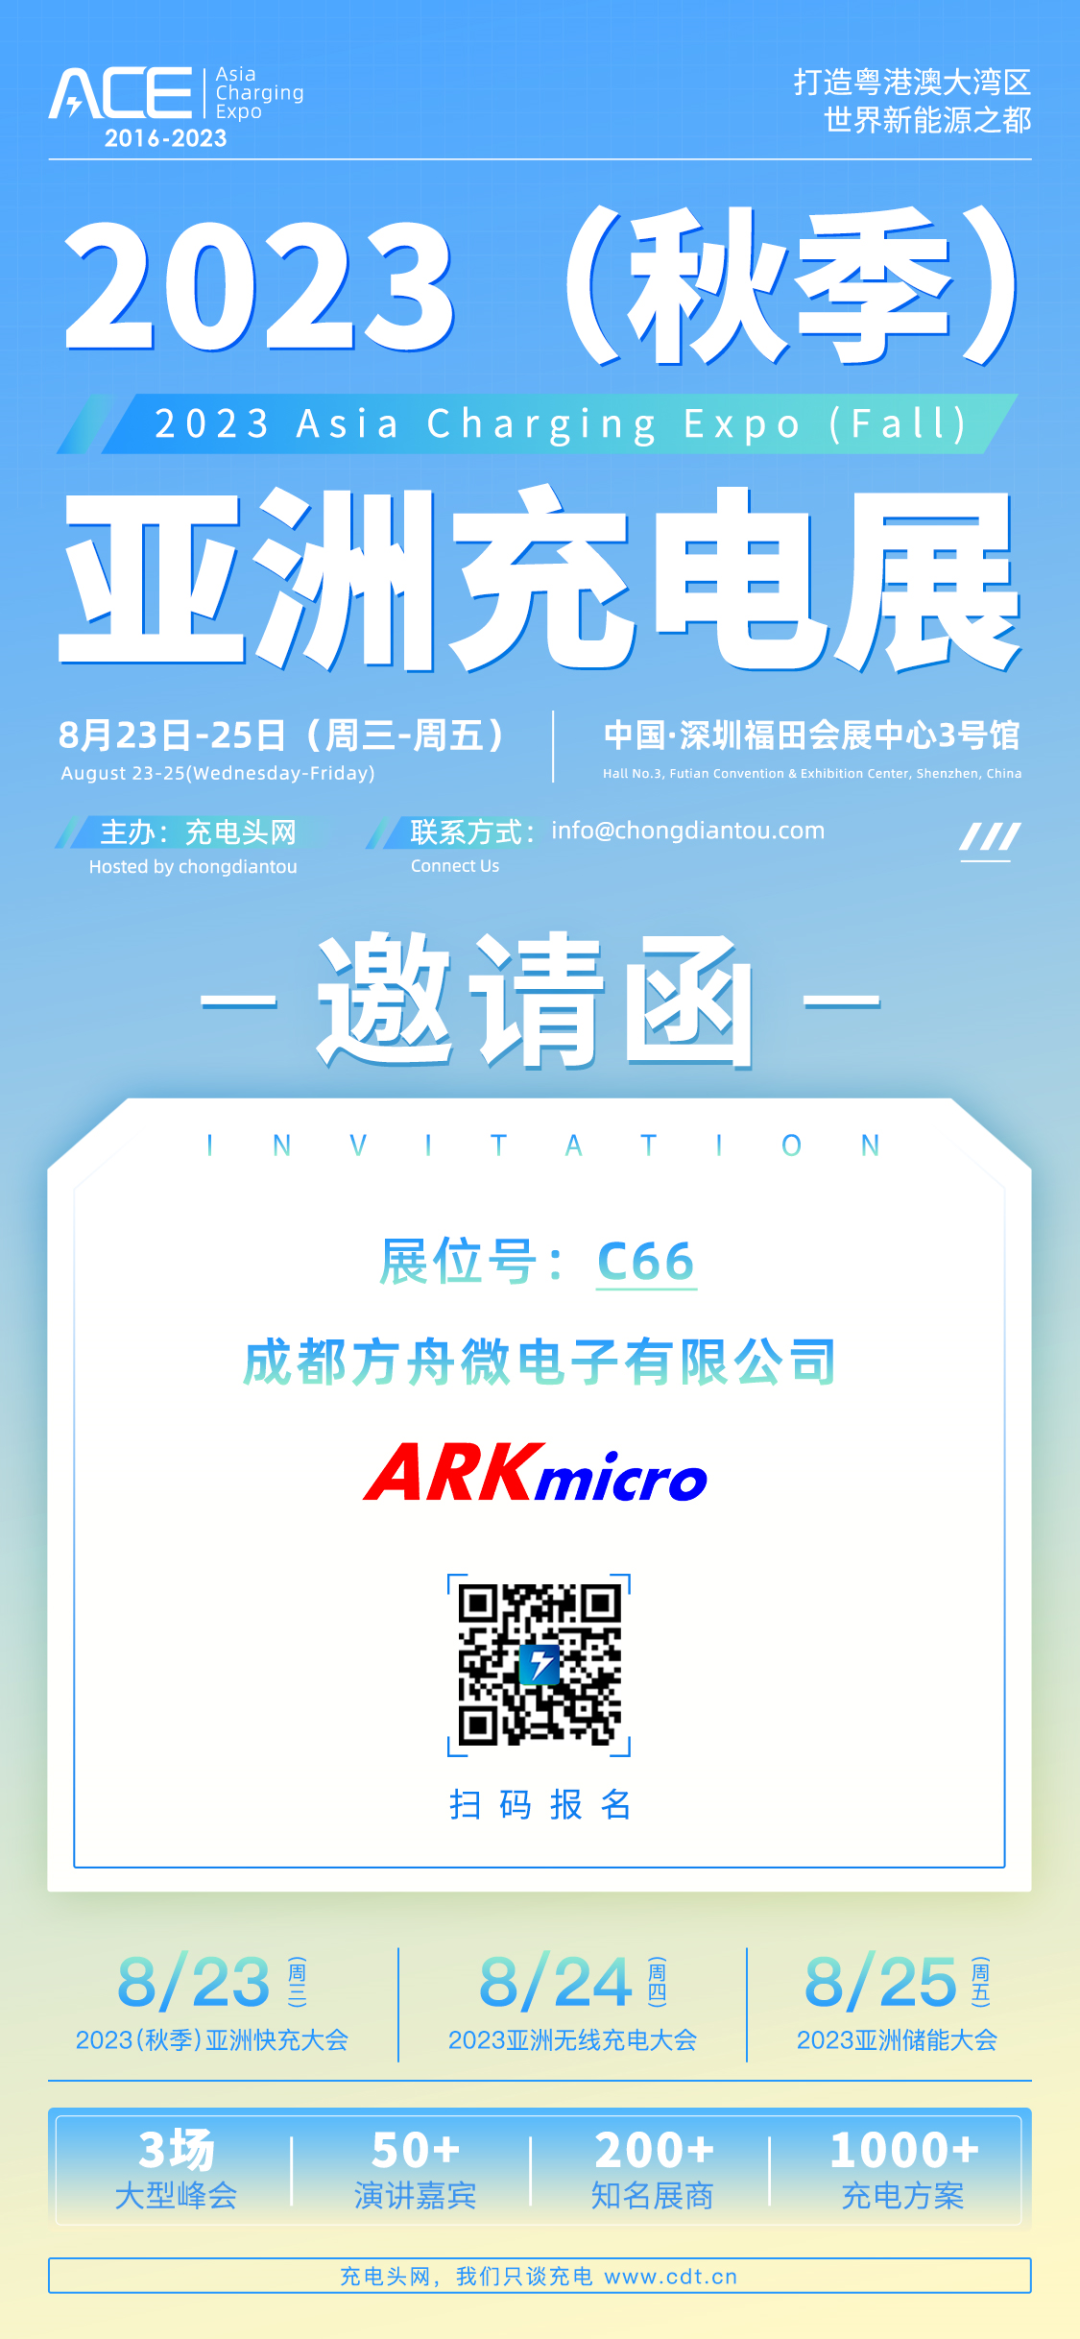 ARK（方舟微）将参加2023（秋季）亚洲充电展-亚洲充电展